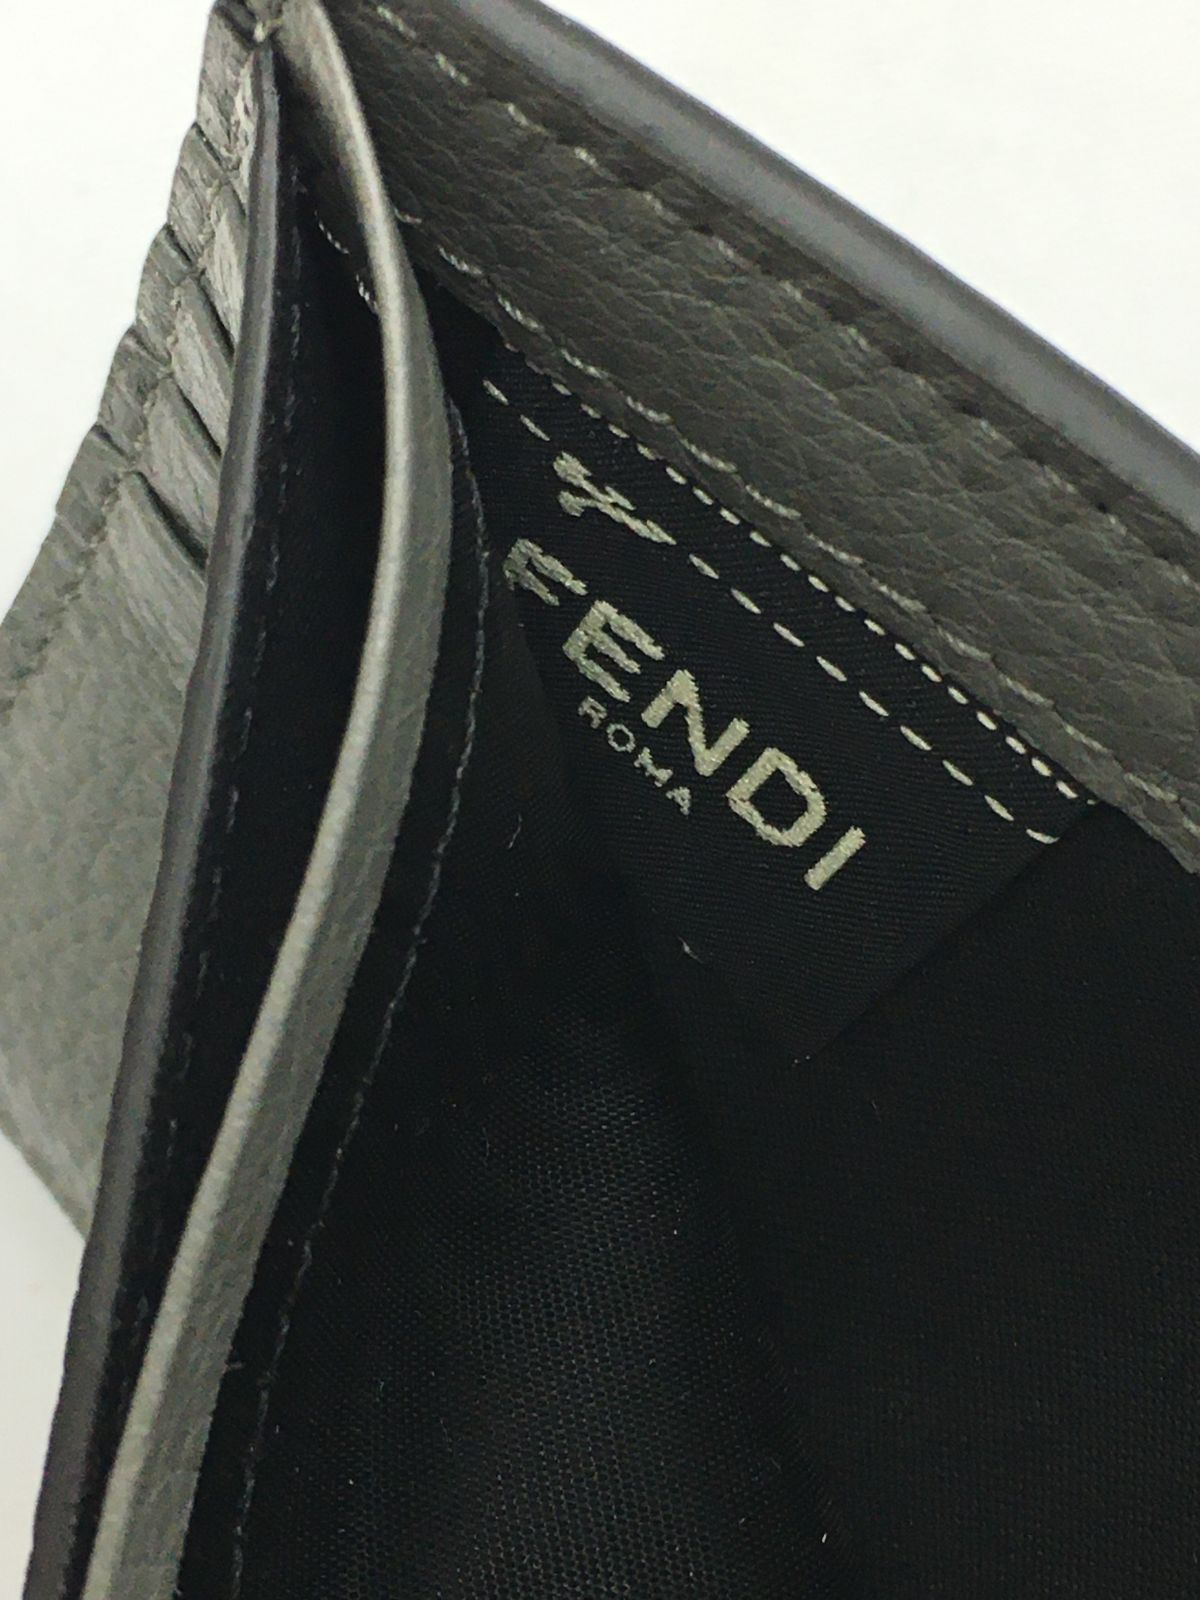 新品 FENDI メタル FFロゴ レザー 2つ折り財布 モノグラム - メルカリ